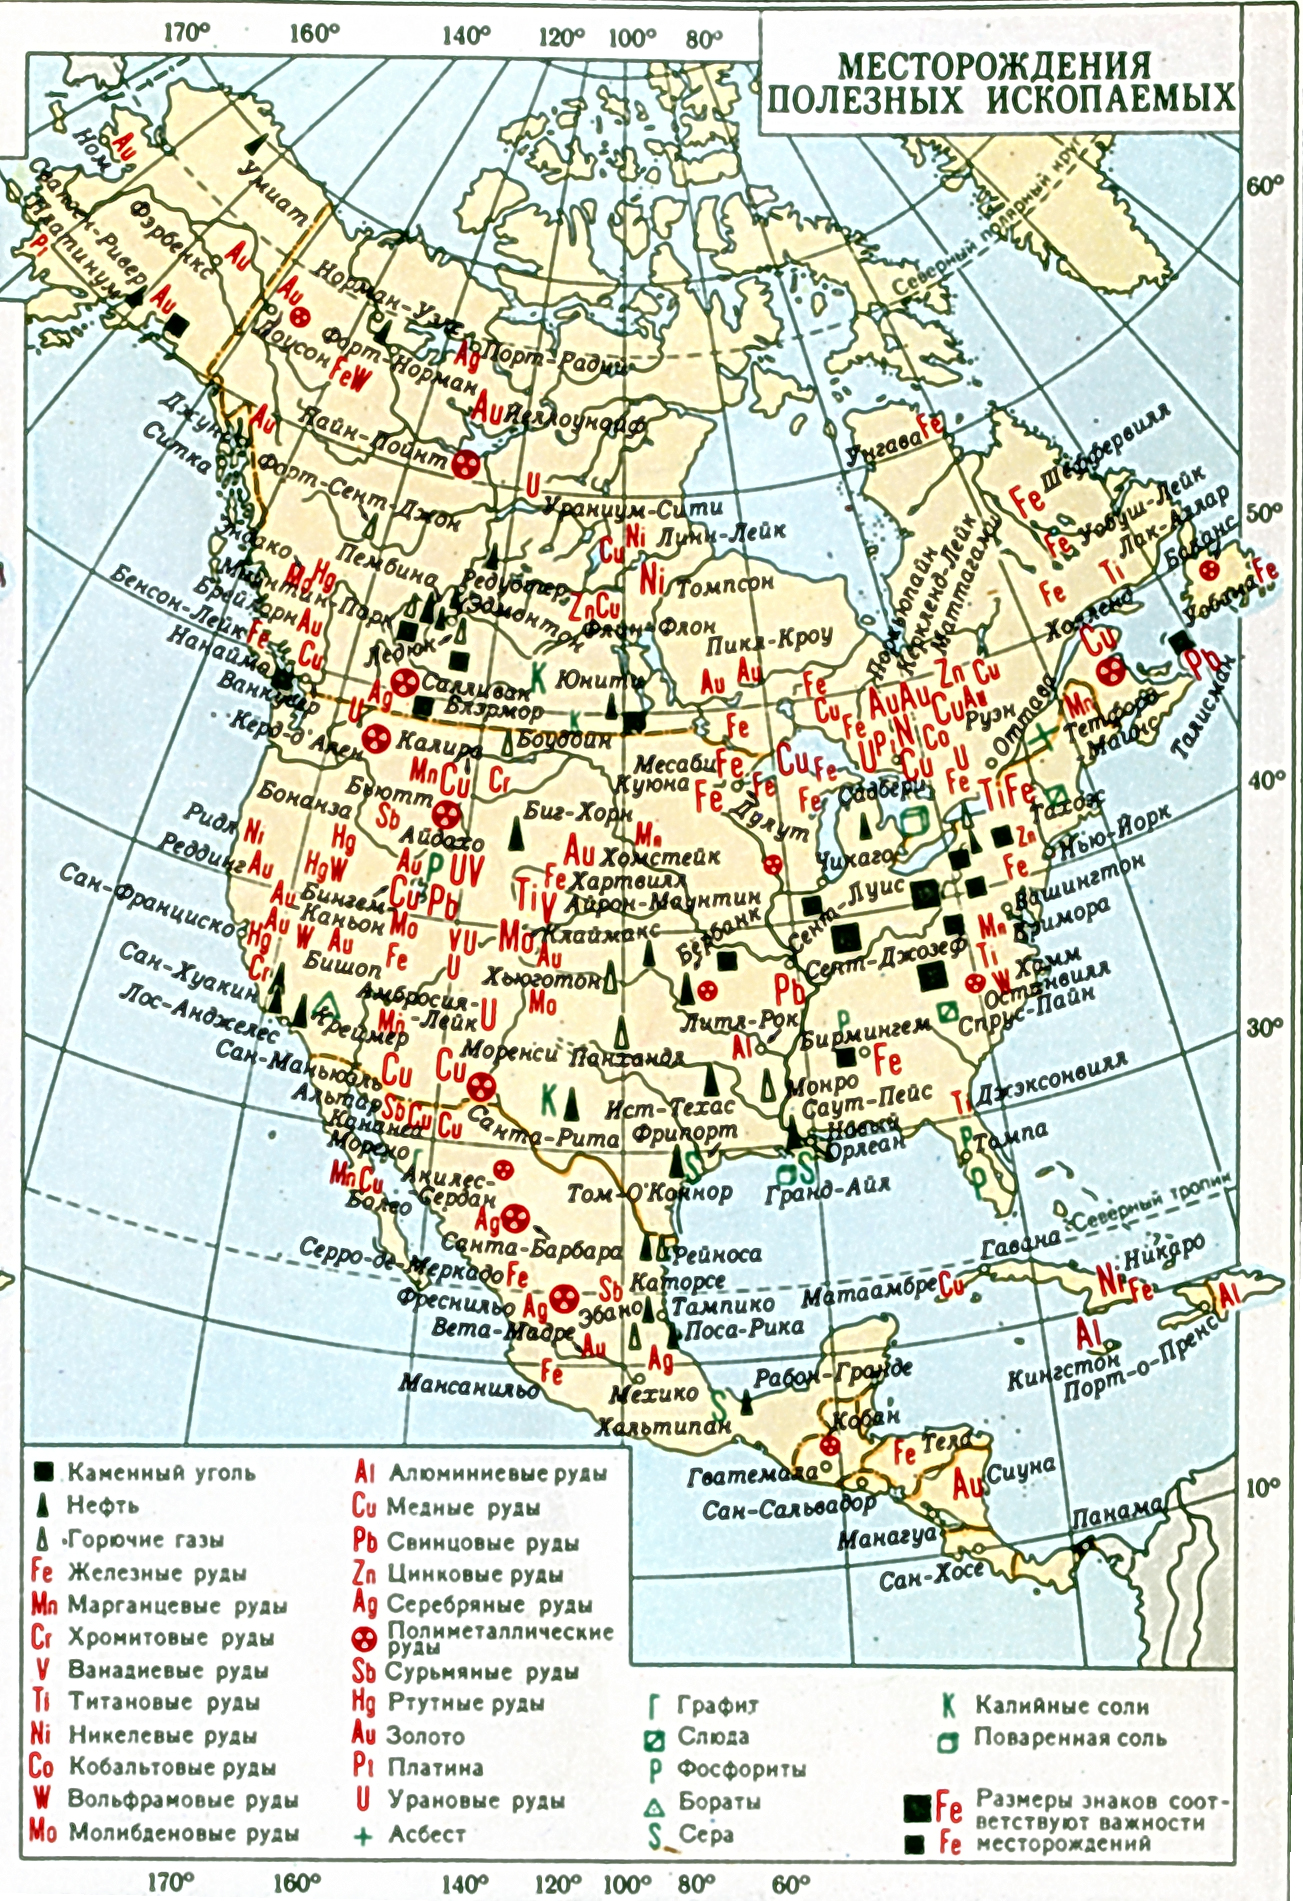 Богатство северной америки. Минеральные ресурсы США карта. Карта Северной Америки месторождения полезных ископаемых. Полезные ископаемые США на карте. Месторождения полезных ископаемых Северной Америки.